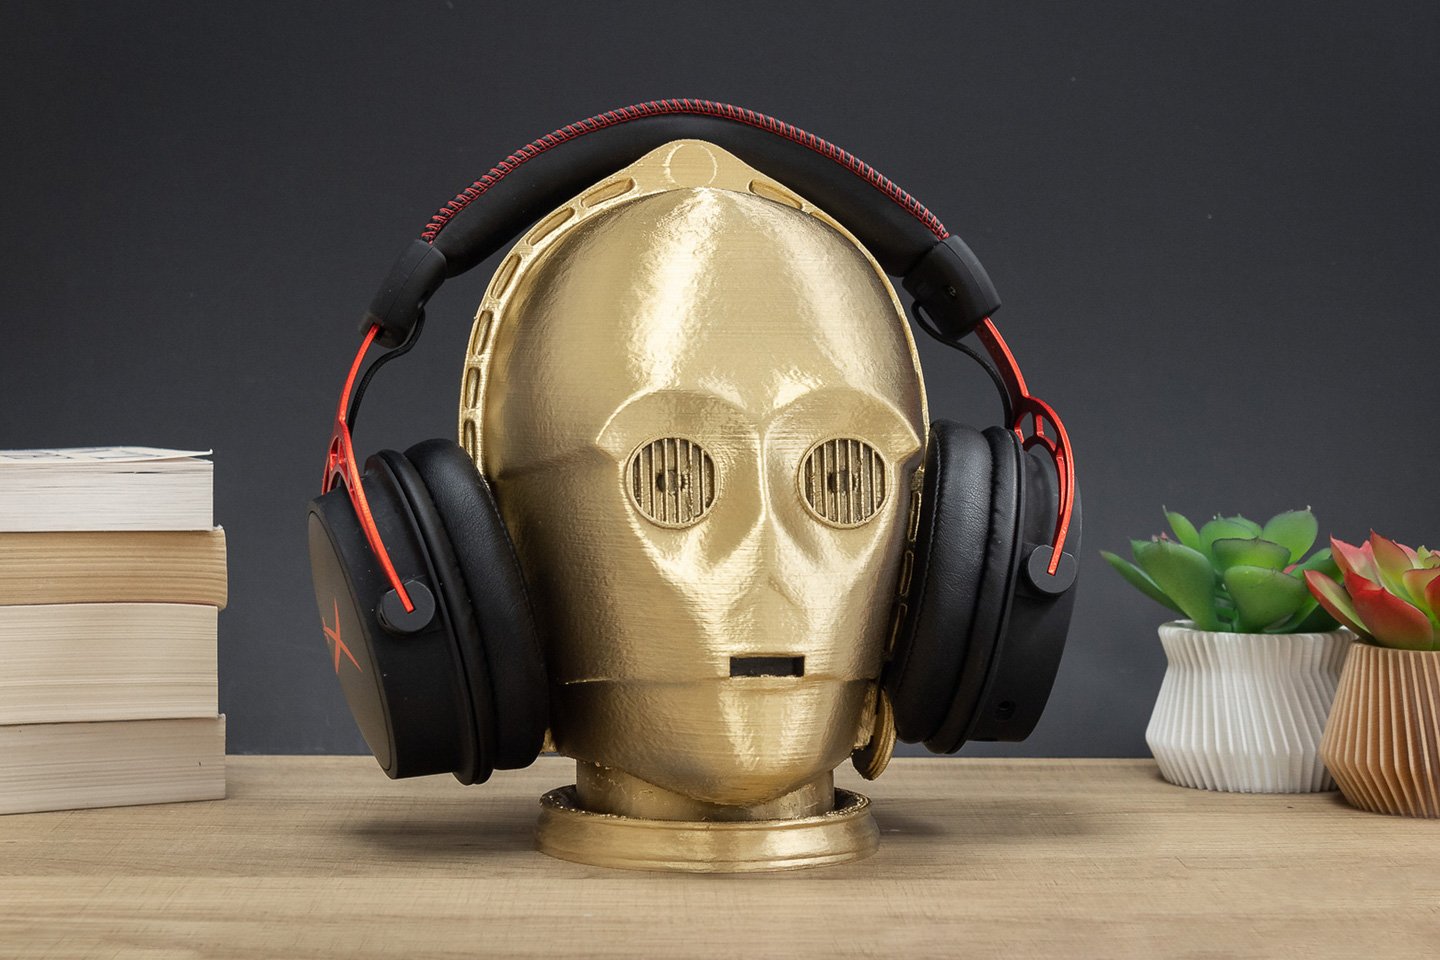 Stojaki na słuchawki inspirowane Gwiezdnymi Wojnami, wydrukowane w 3D, są idealnym dodatkiem do świętowania 4 maja!